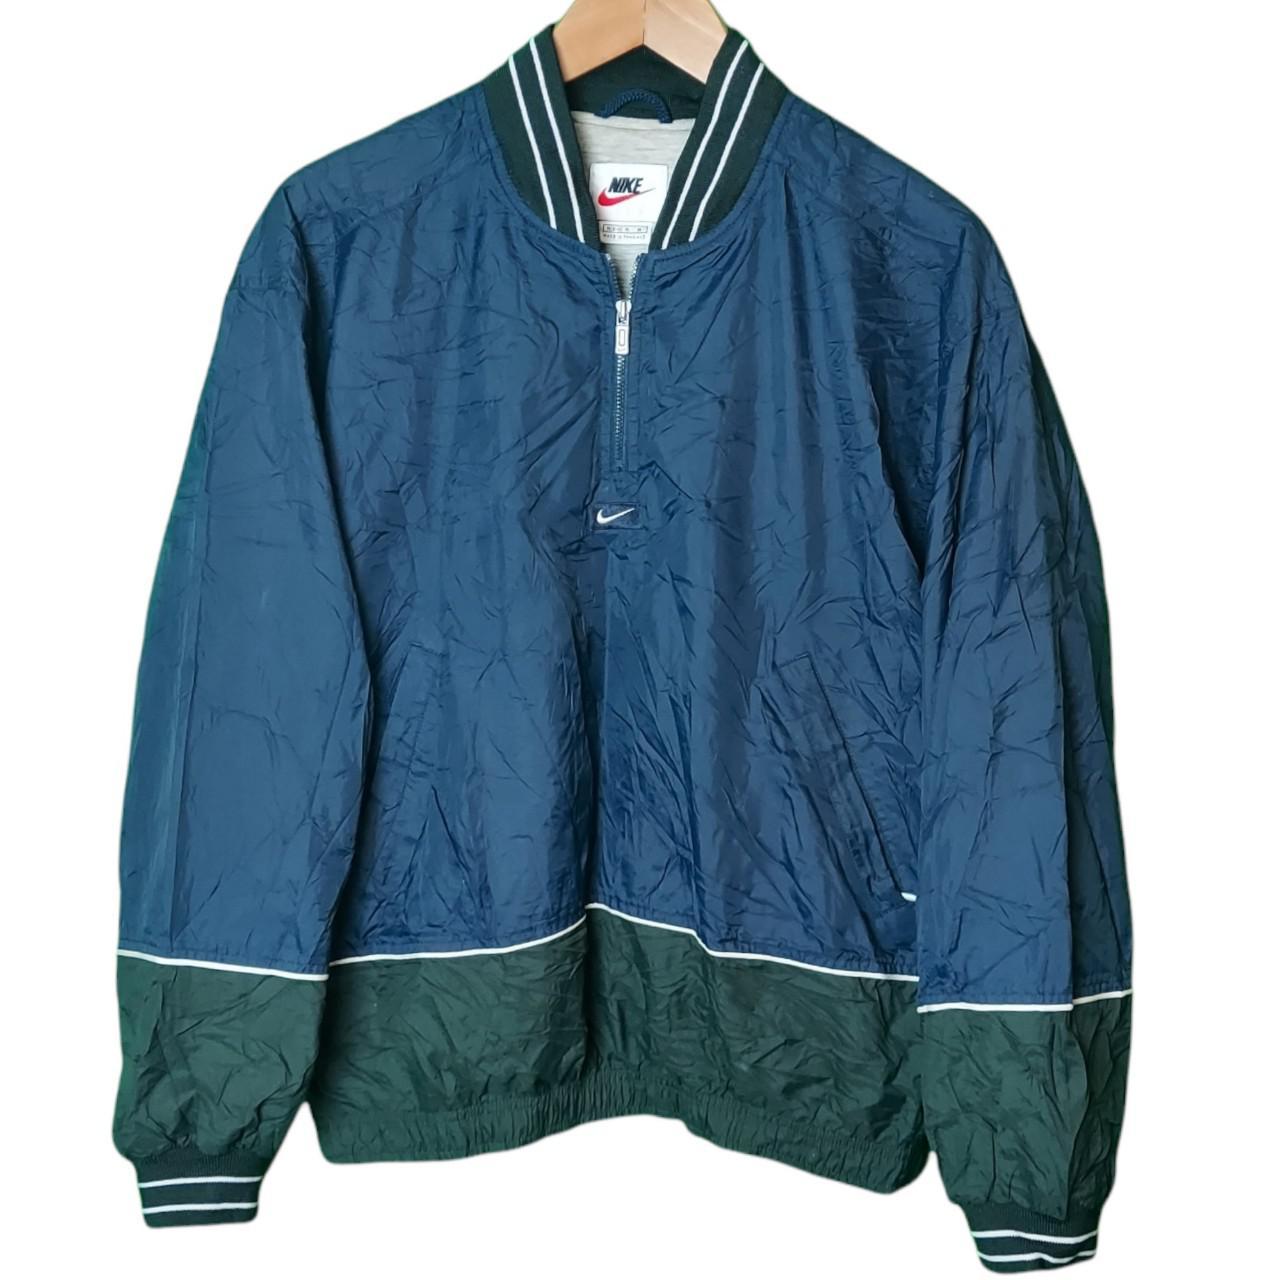 Nike Jacket This vintage 1990s Navy Nike pullover... - Depop